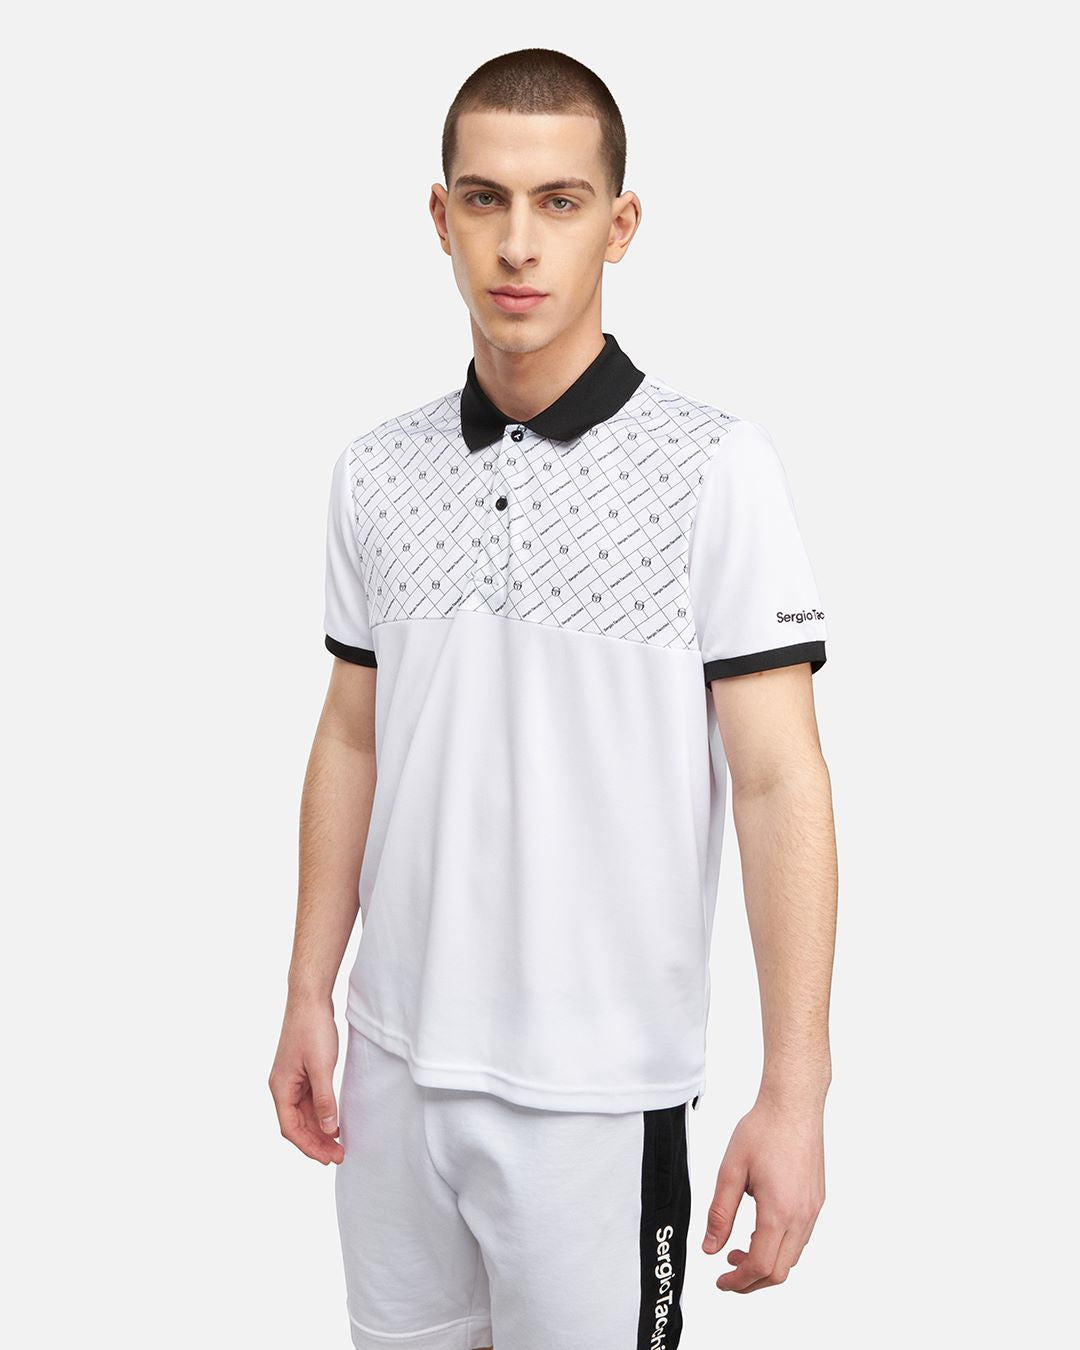 Sergio Tacchini Diamante Polo Shirt - White/Black